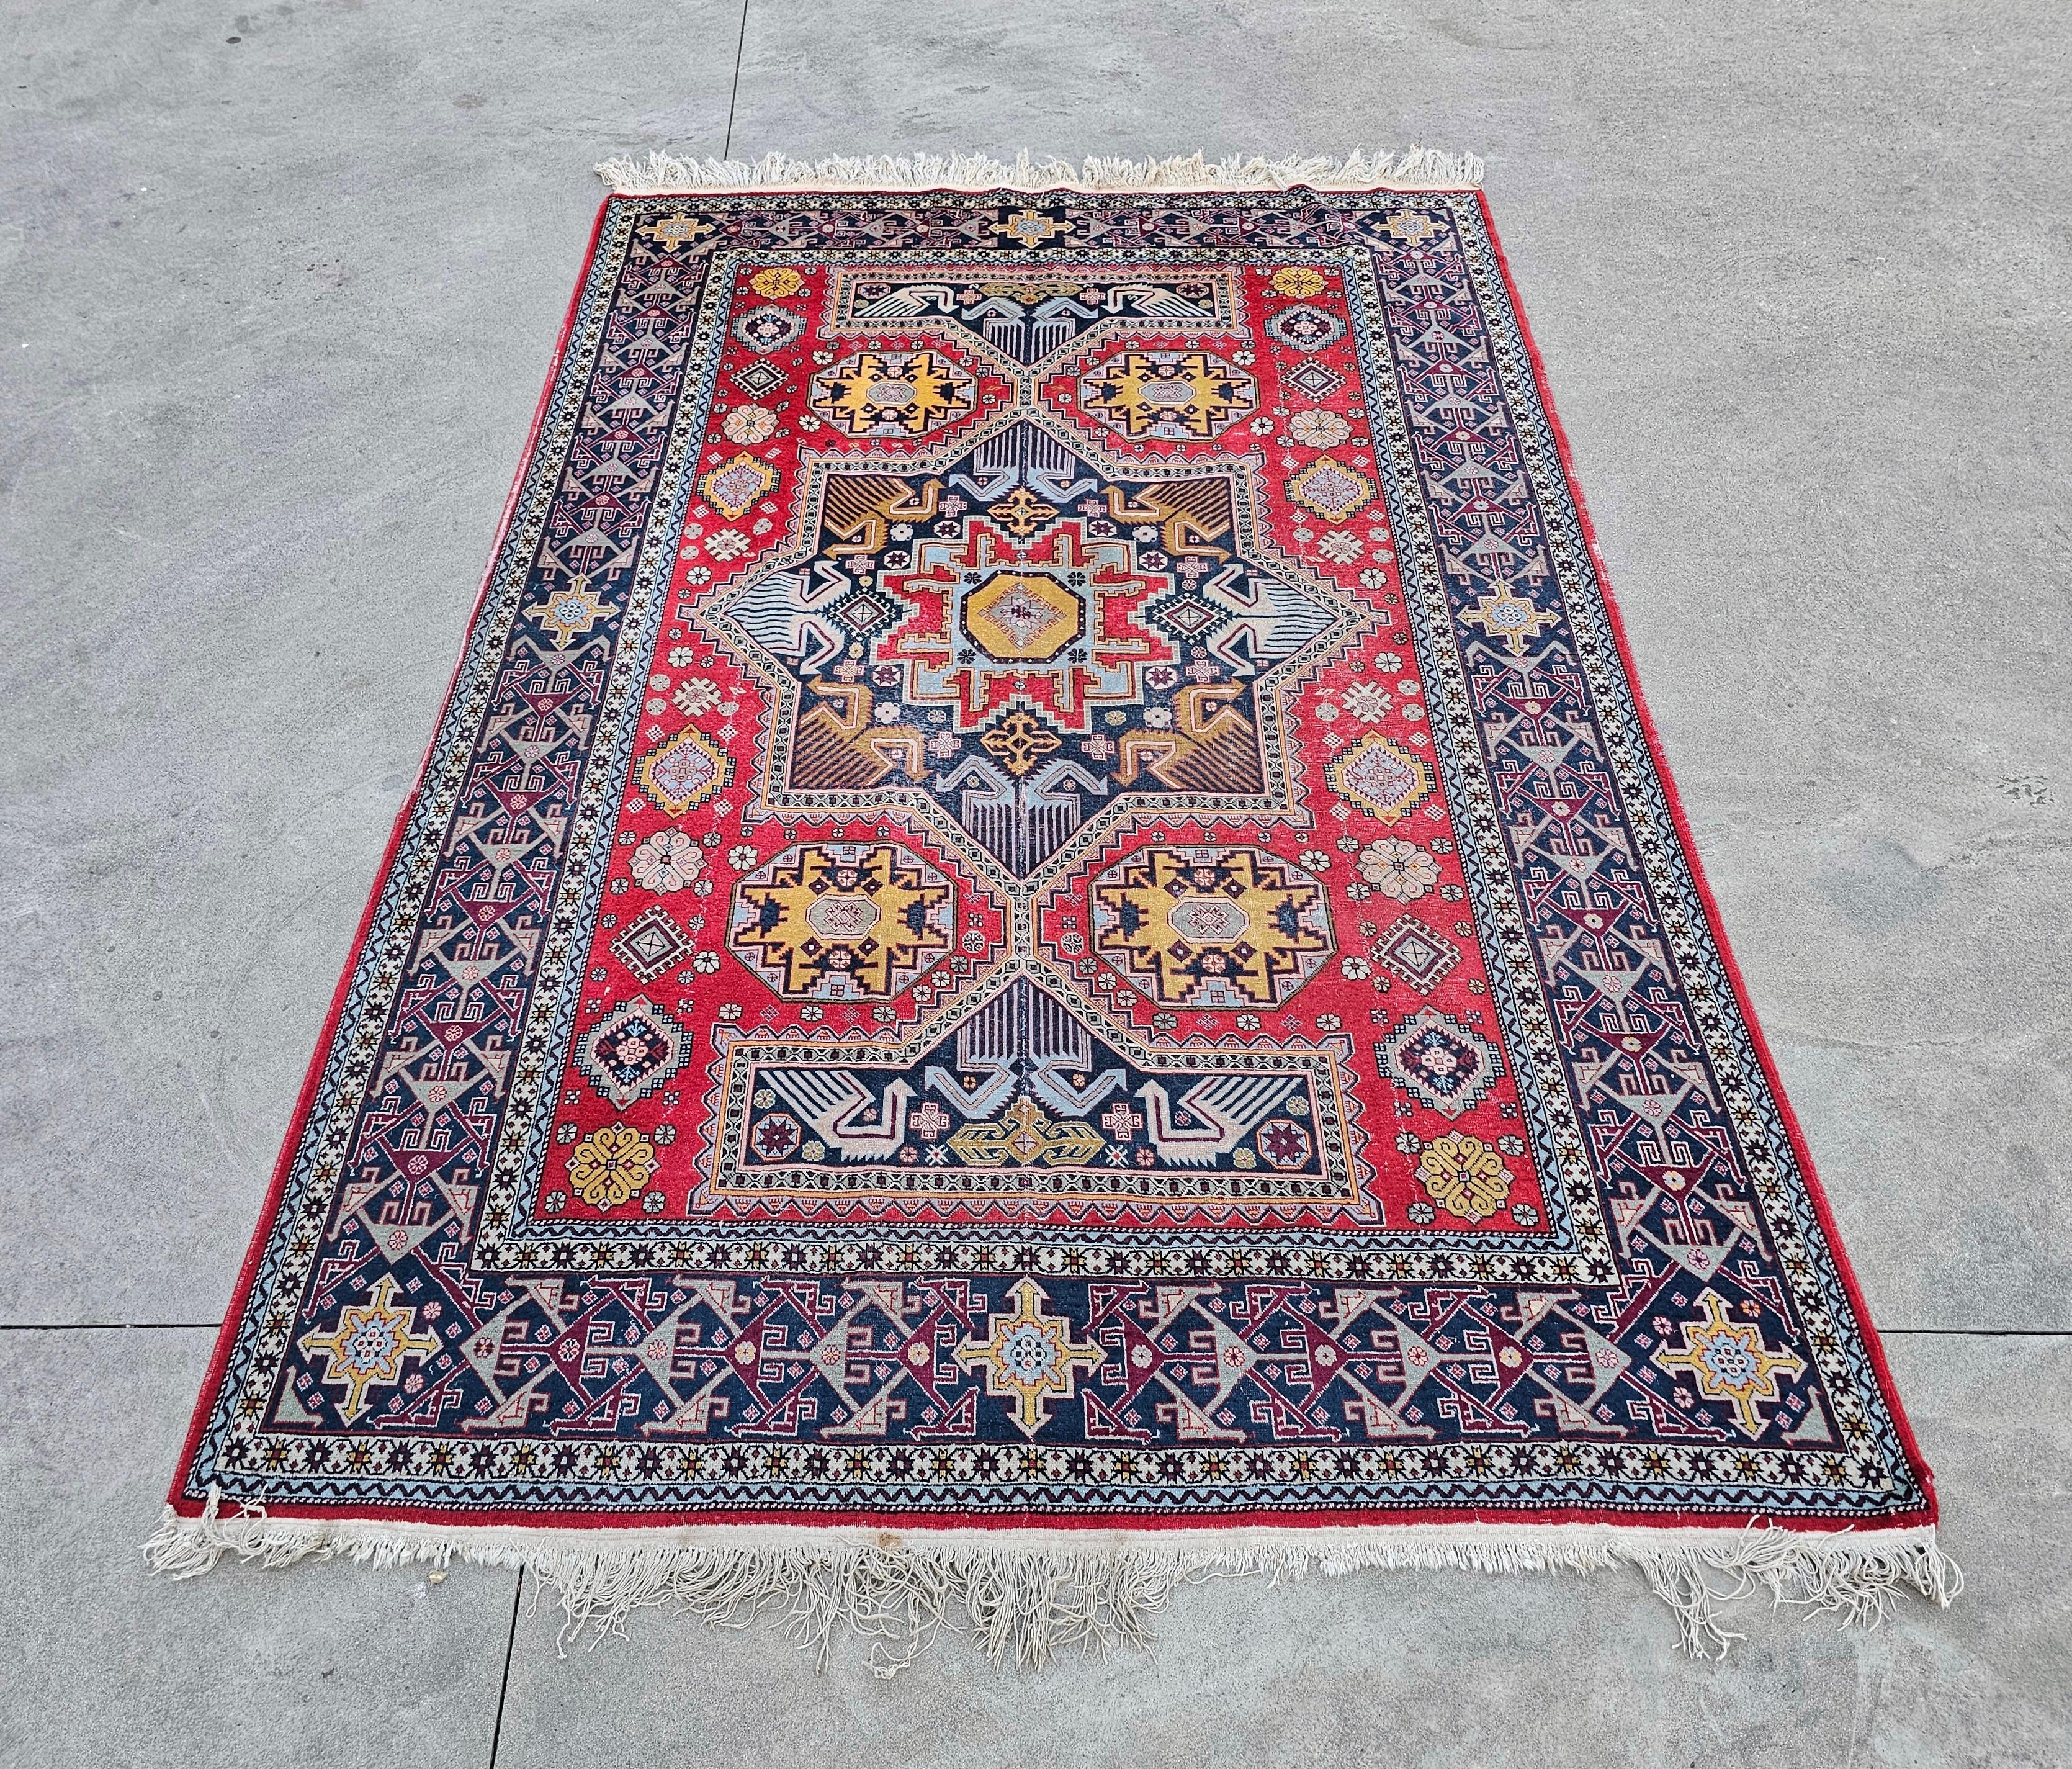 In diesem Angebot finden Sie einen antiken Kazak-Teppich mit geometrischen Mustern und leuchtenden Farben. Es wurde in afghanischen Stämmen im ersten Jahrzehnt des 20. Jahrhunderts handgeknüpft. Der Teppich ist aus 100 % Wolle gefertigt.

Der